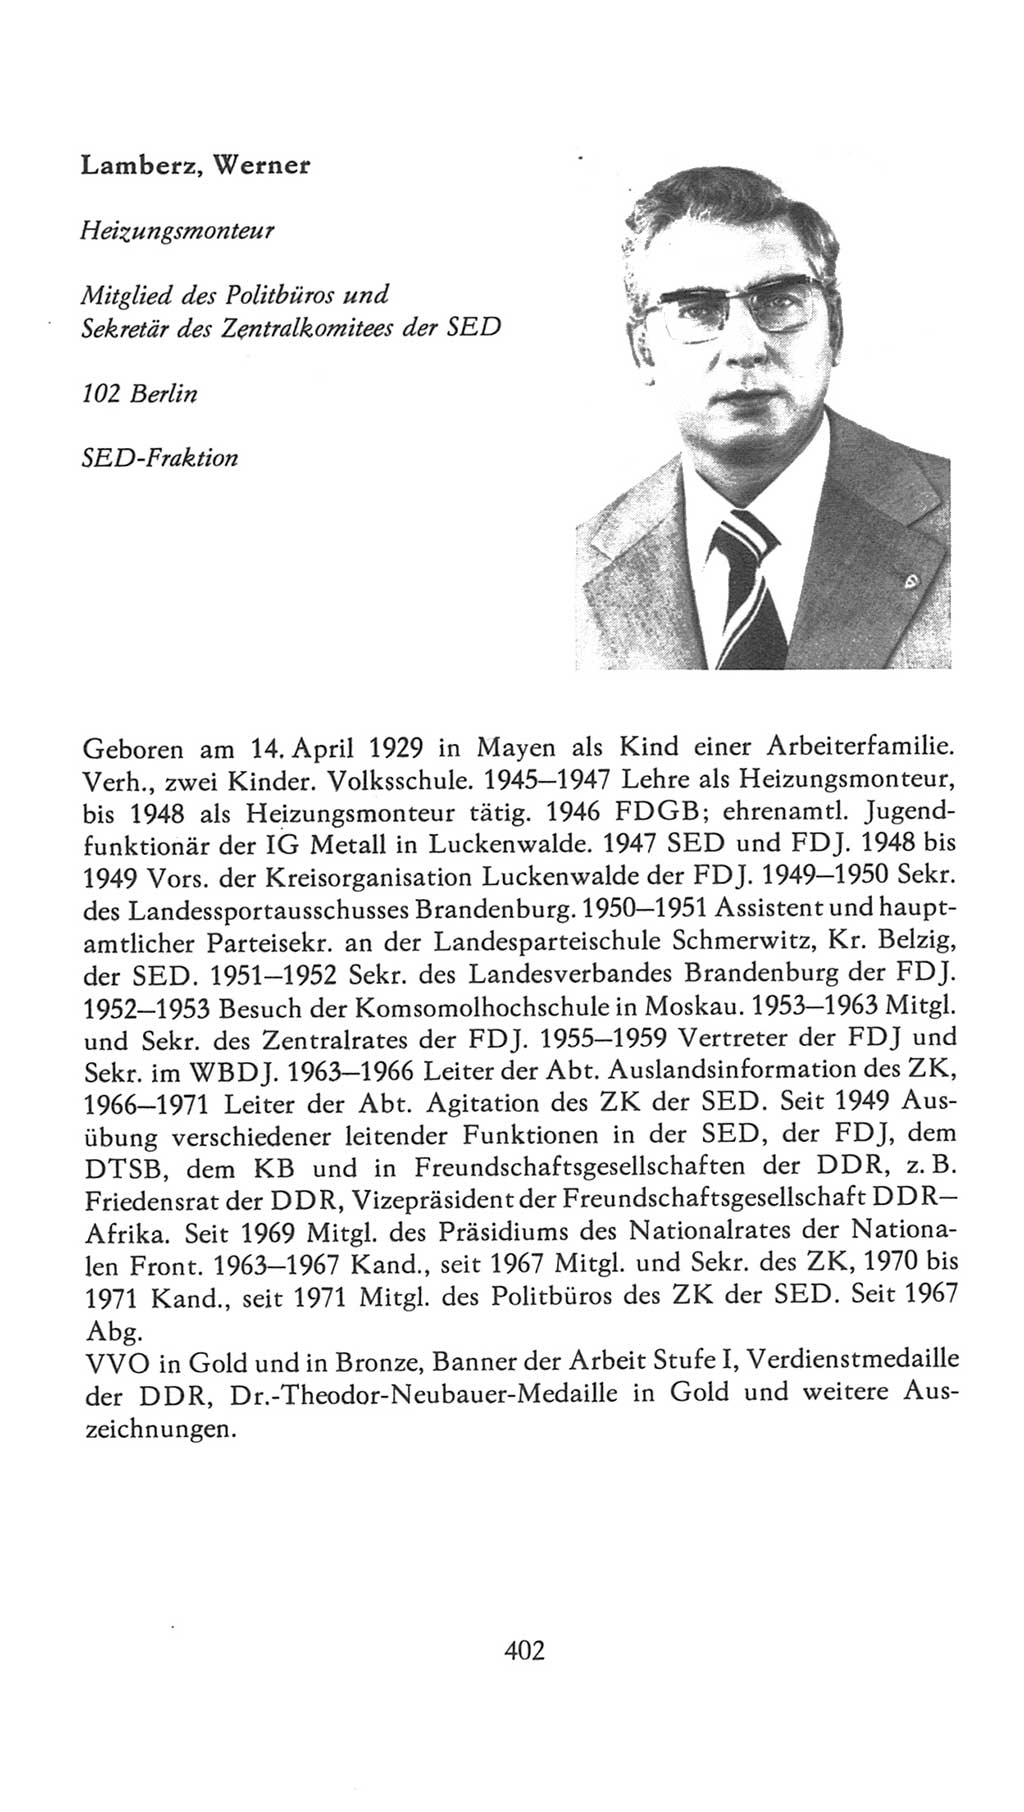 Volkskammer (VK) der Deutschen Demokratischen Republik (DDR), 7. Wahlperiode 1976-1981, Seite 402 (VK. DDR 7. WP. 1976-1981, S. 402)